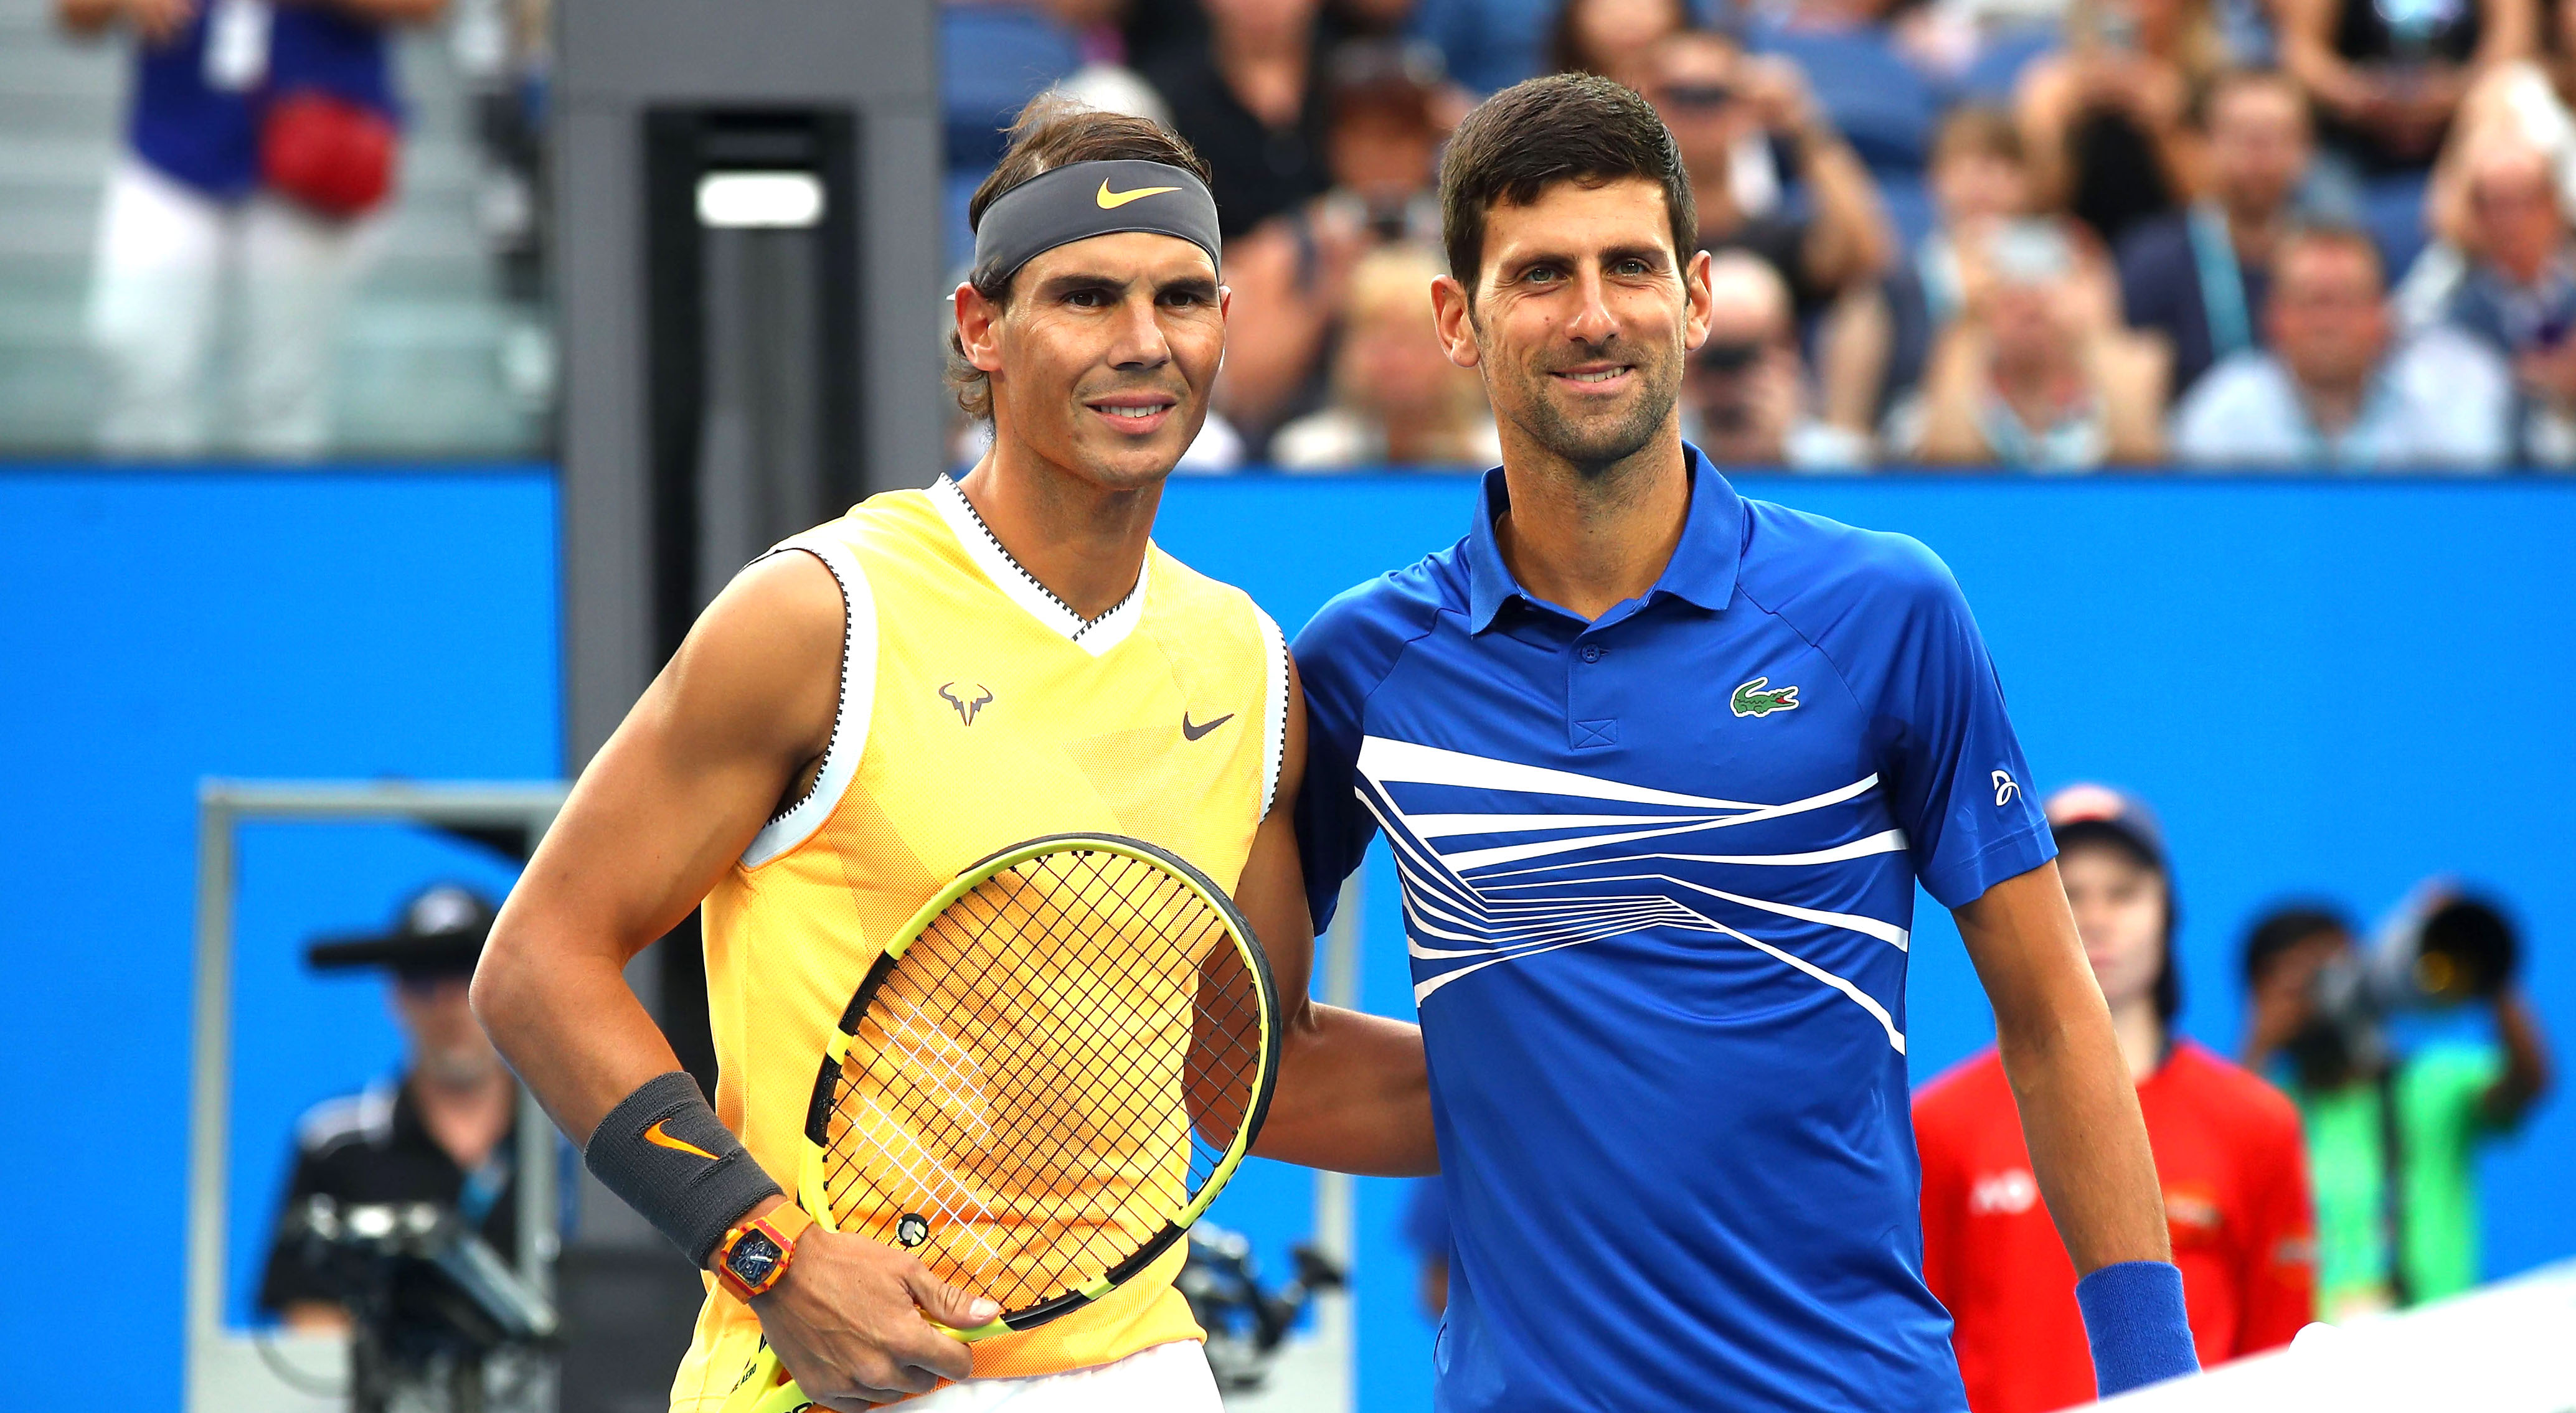 Rafael Nadal and Novak Djokovic land on opposite halves of Australian Open draw